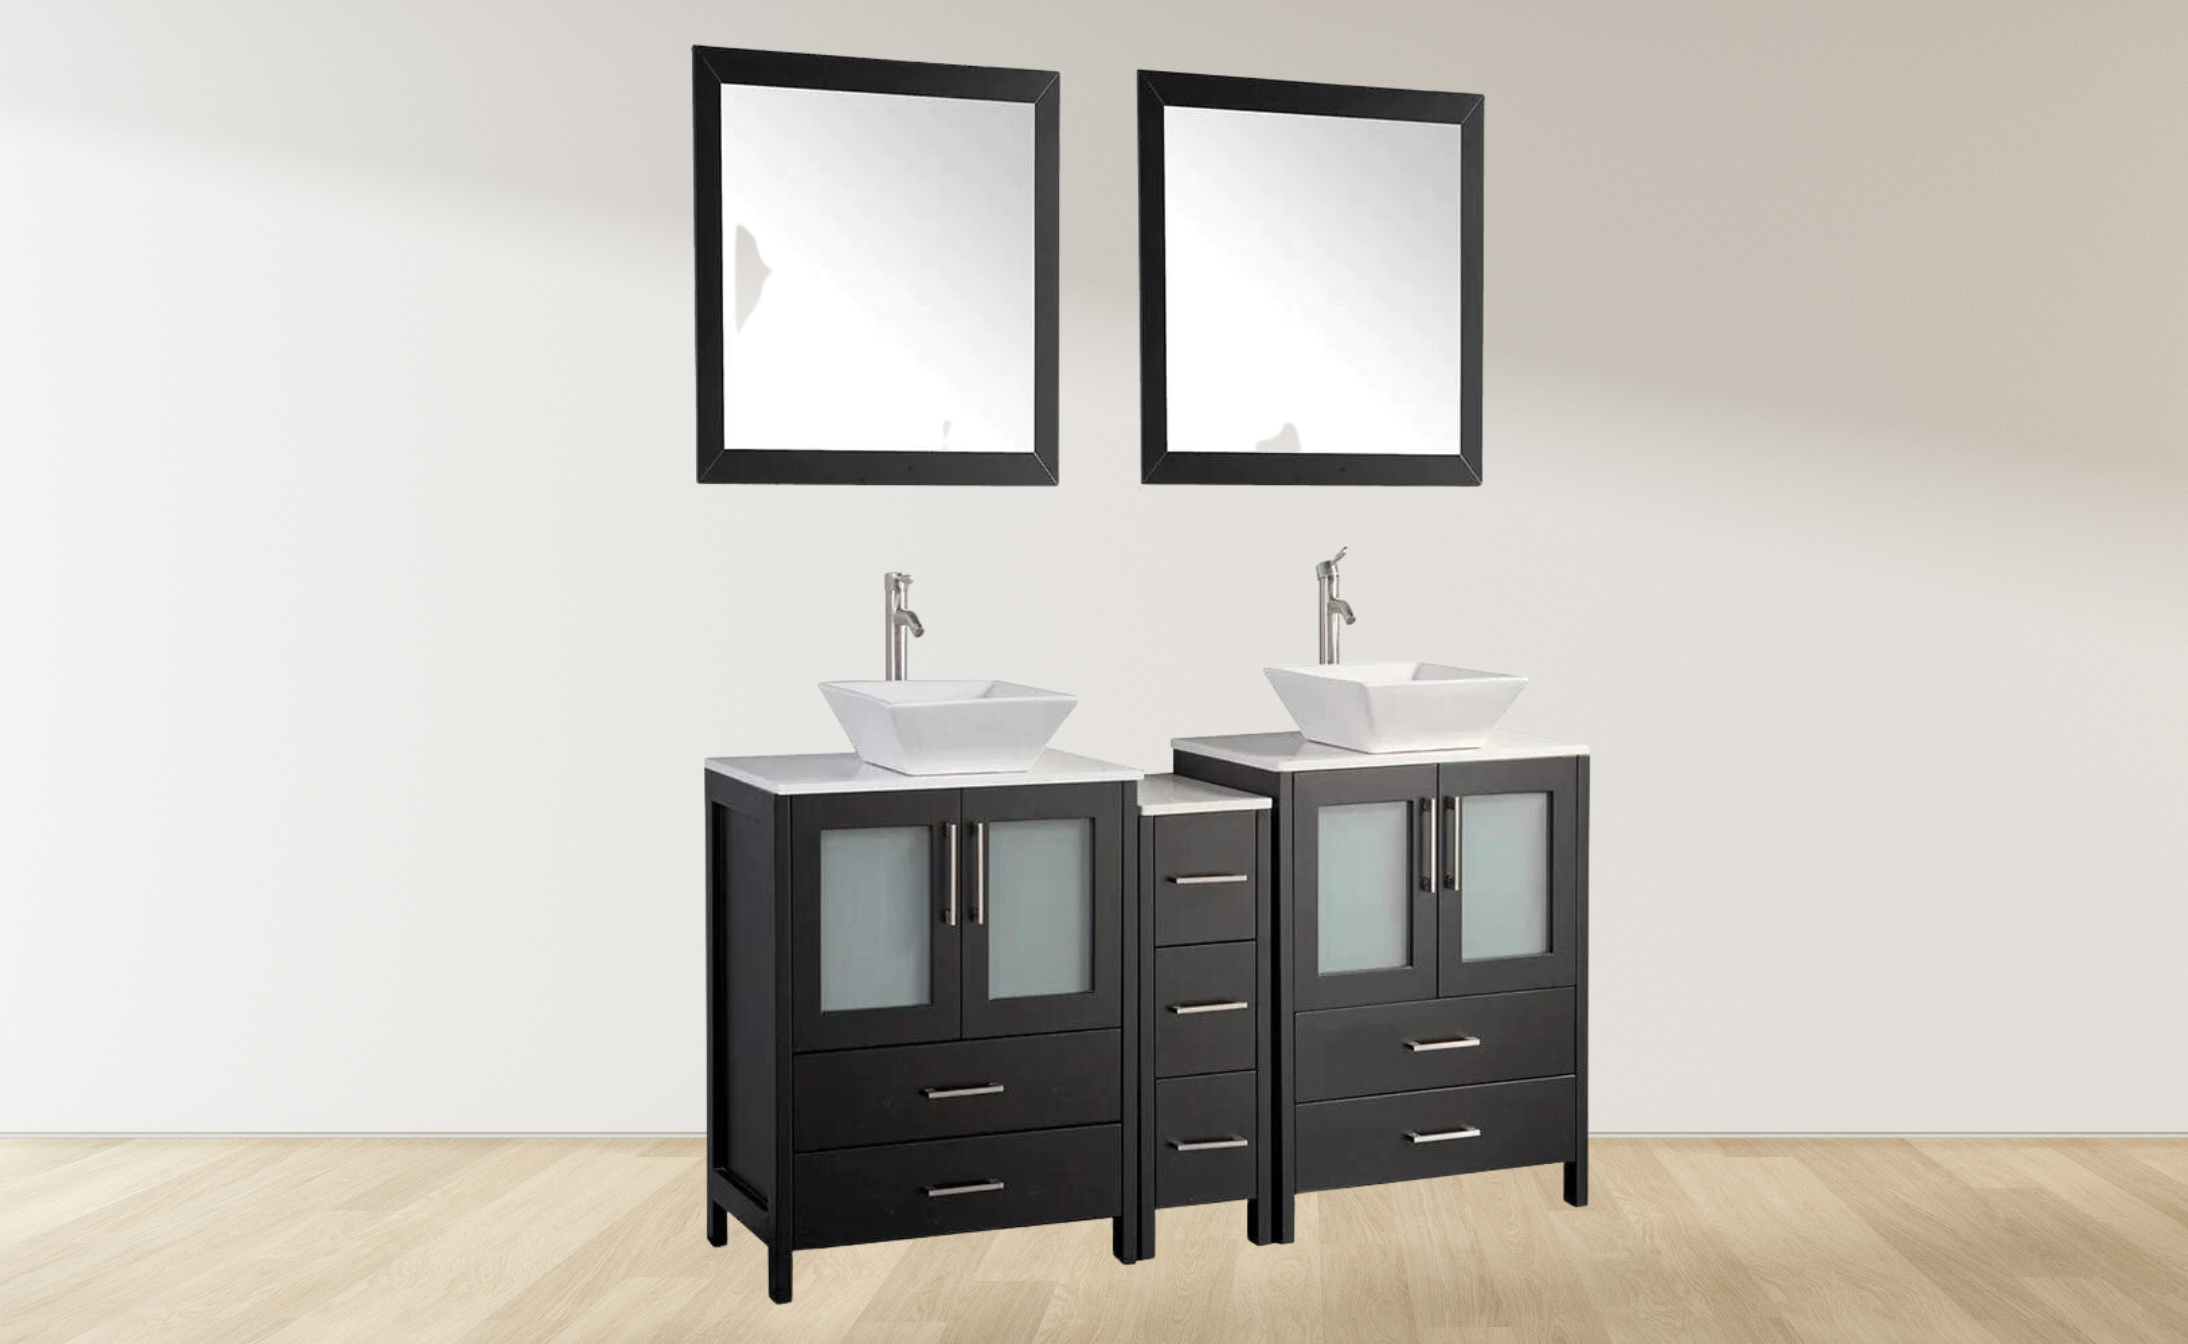 72 in. Double Sink Bathroom Vanity Combo Set in Espresso - Decohub Home